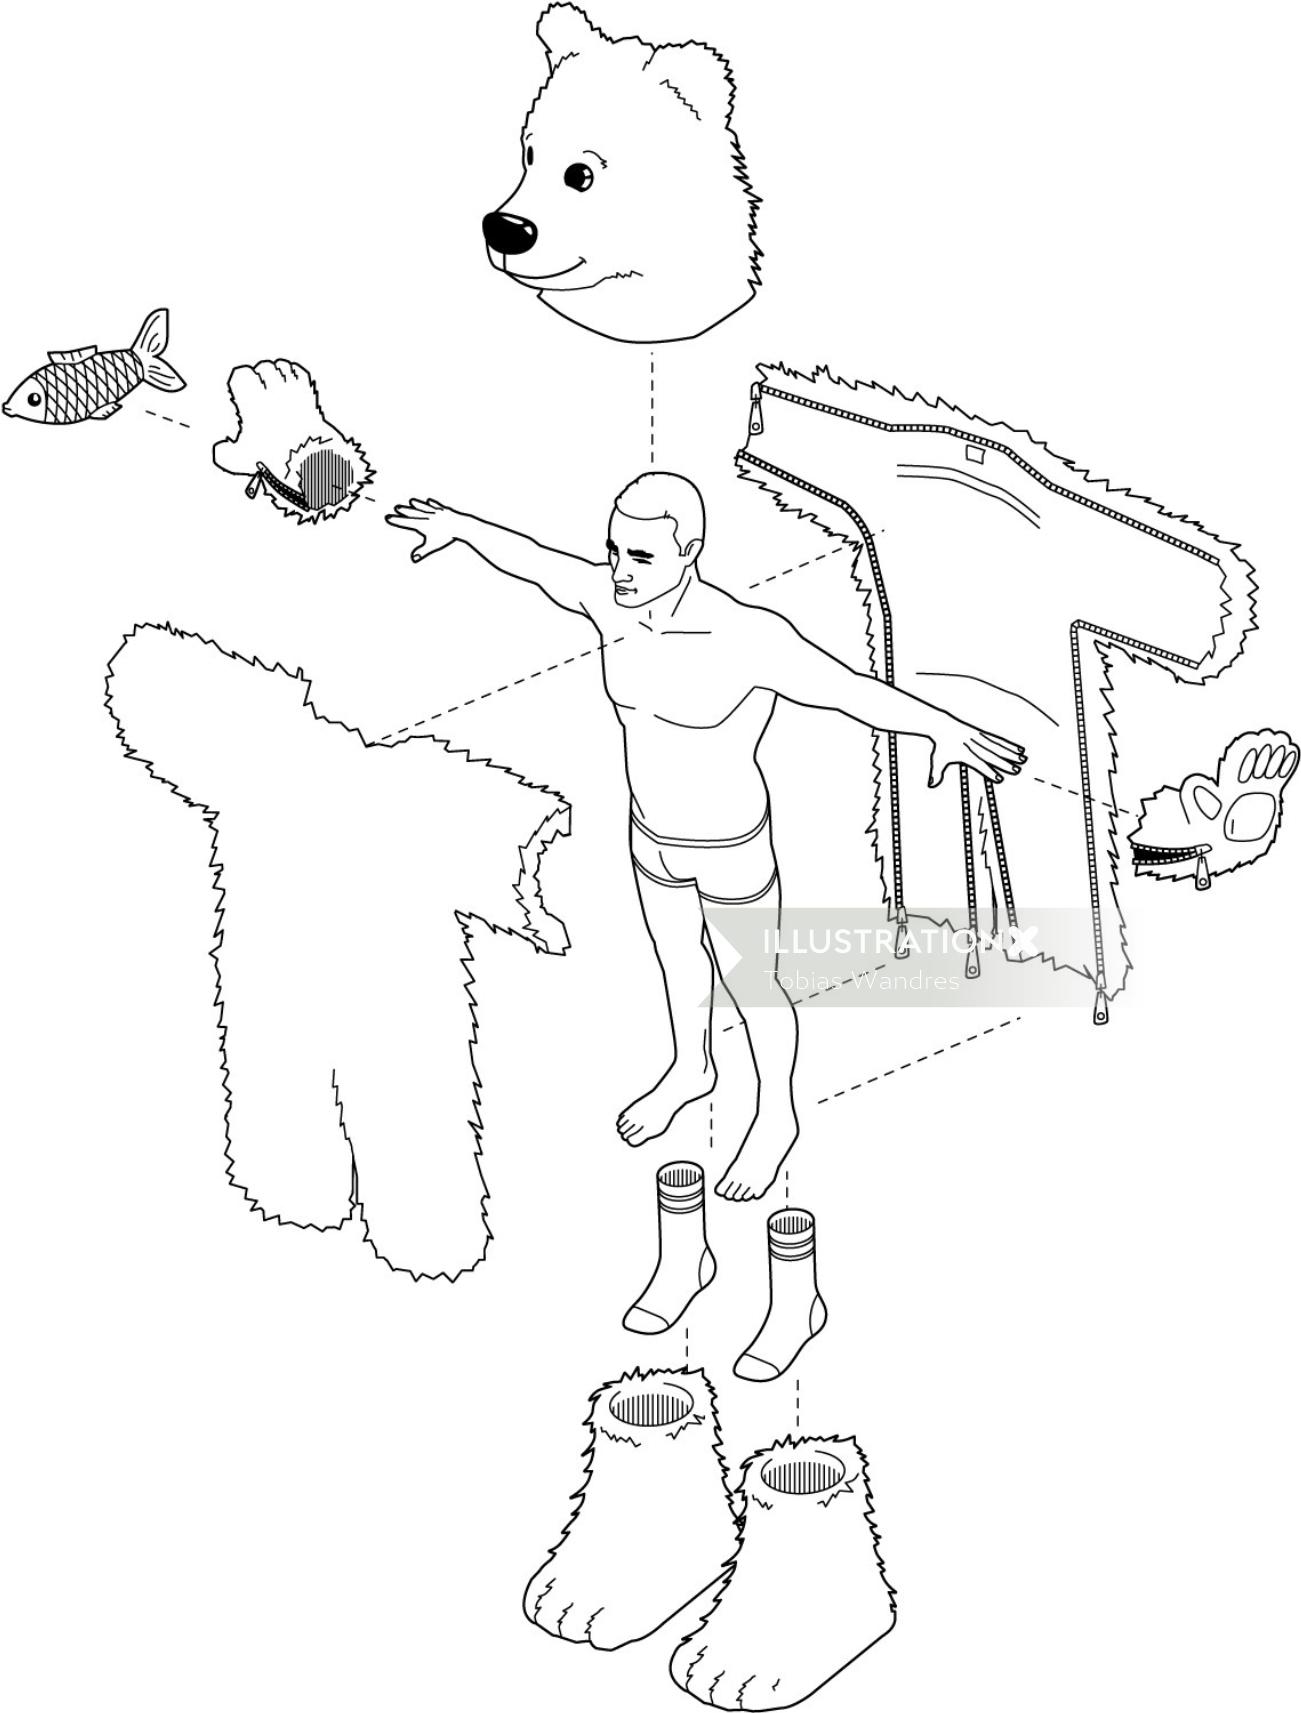 Una ilustración del ejercicio del hombre